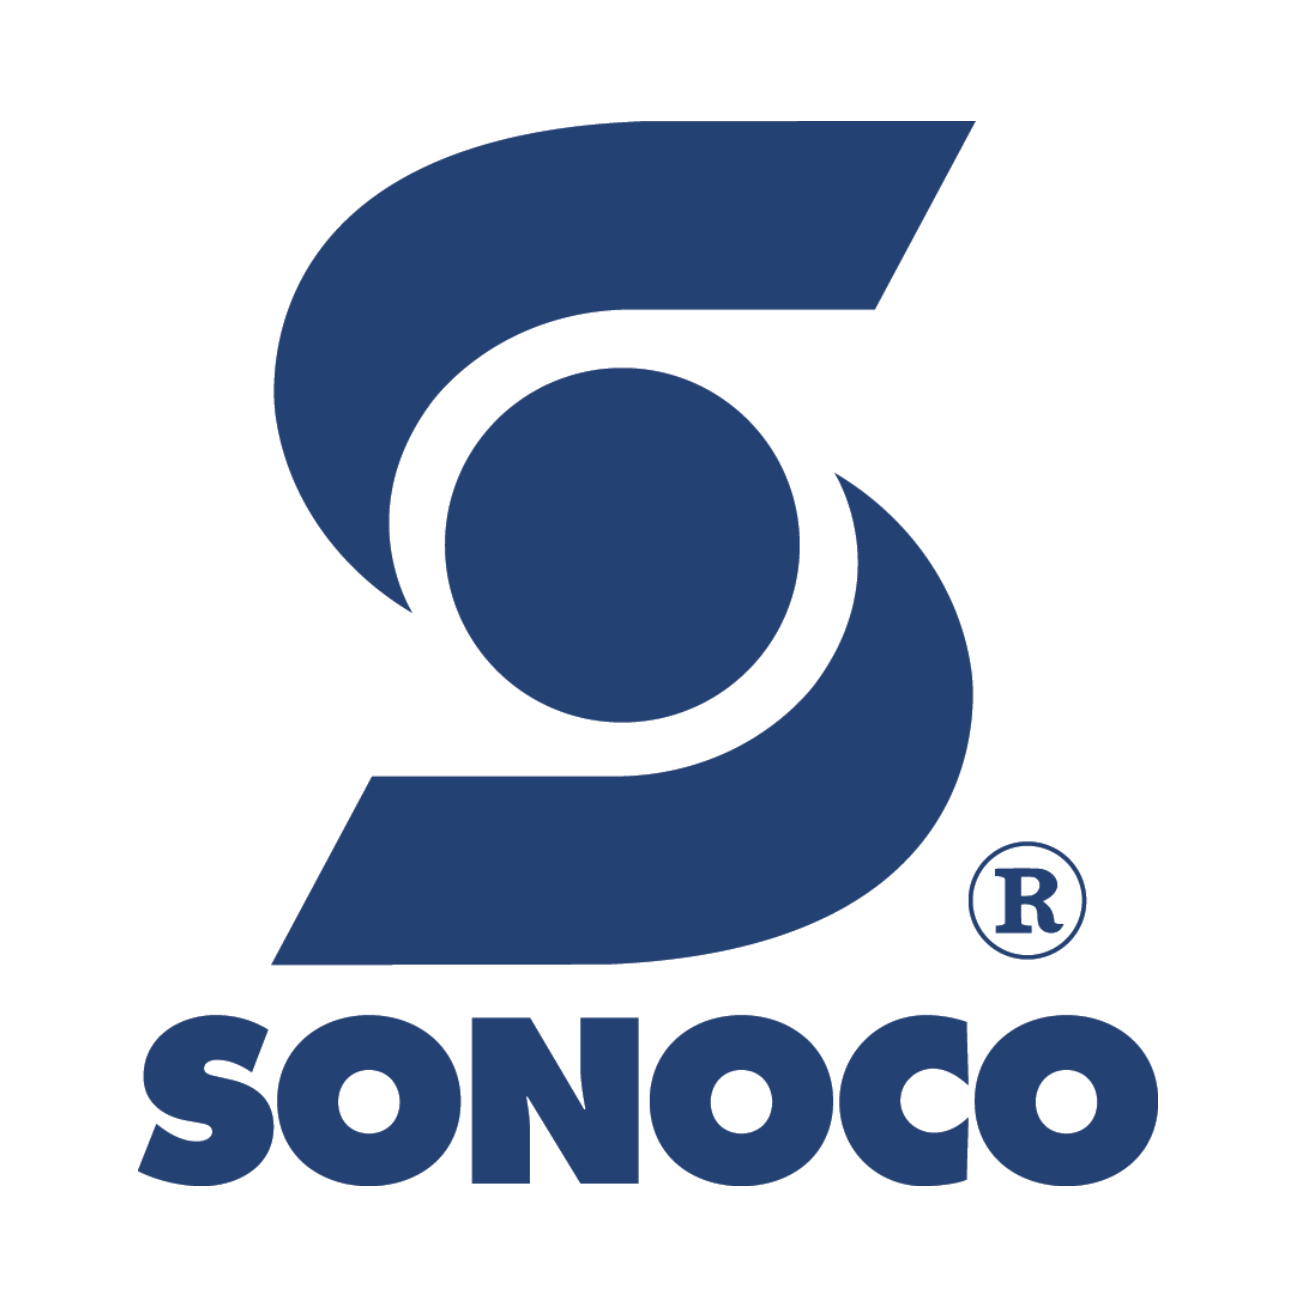 Sonoco Logo - Welcome to Sonoco | Sonoco Products Company